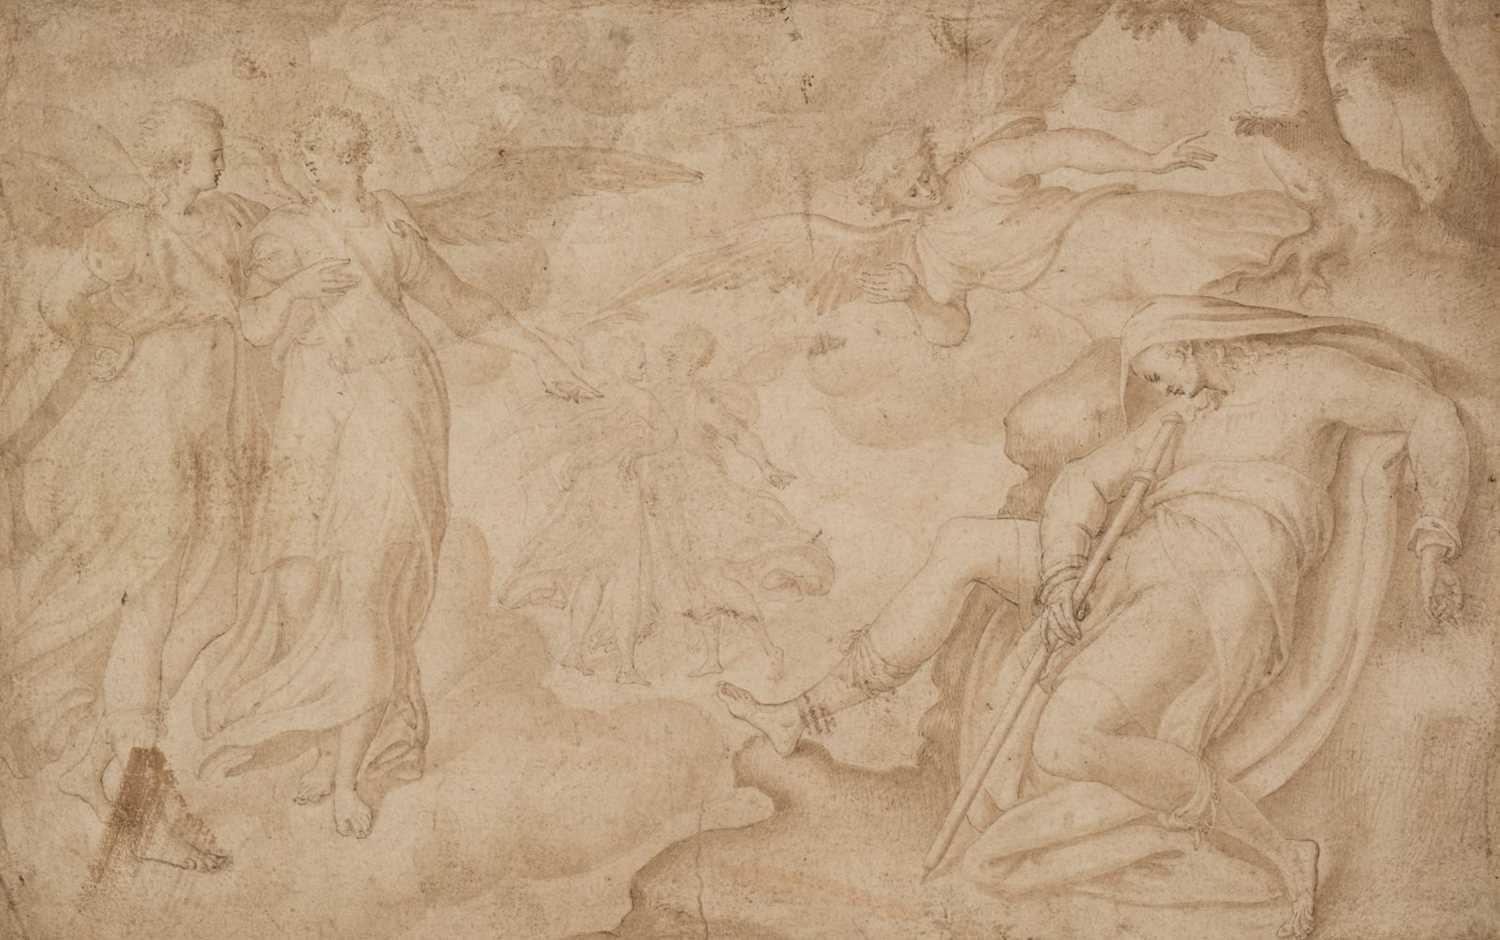 14 - A. van Blocklandt (1532-1583). The Dream of Jacob, circa 1570, pen and ink and wash